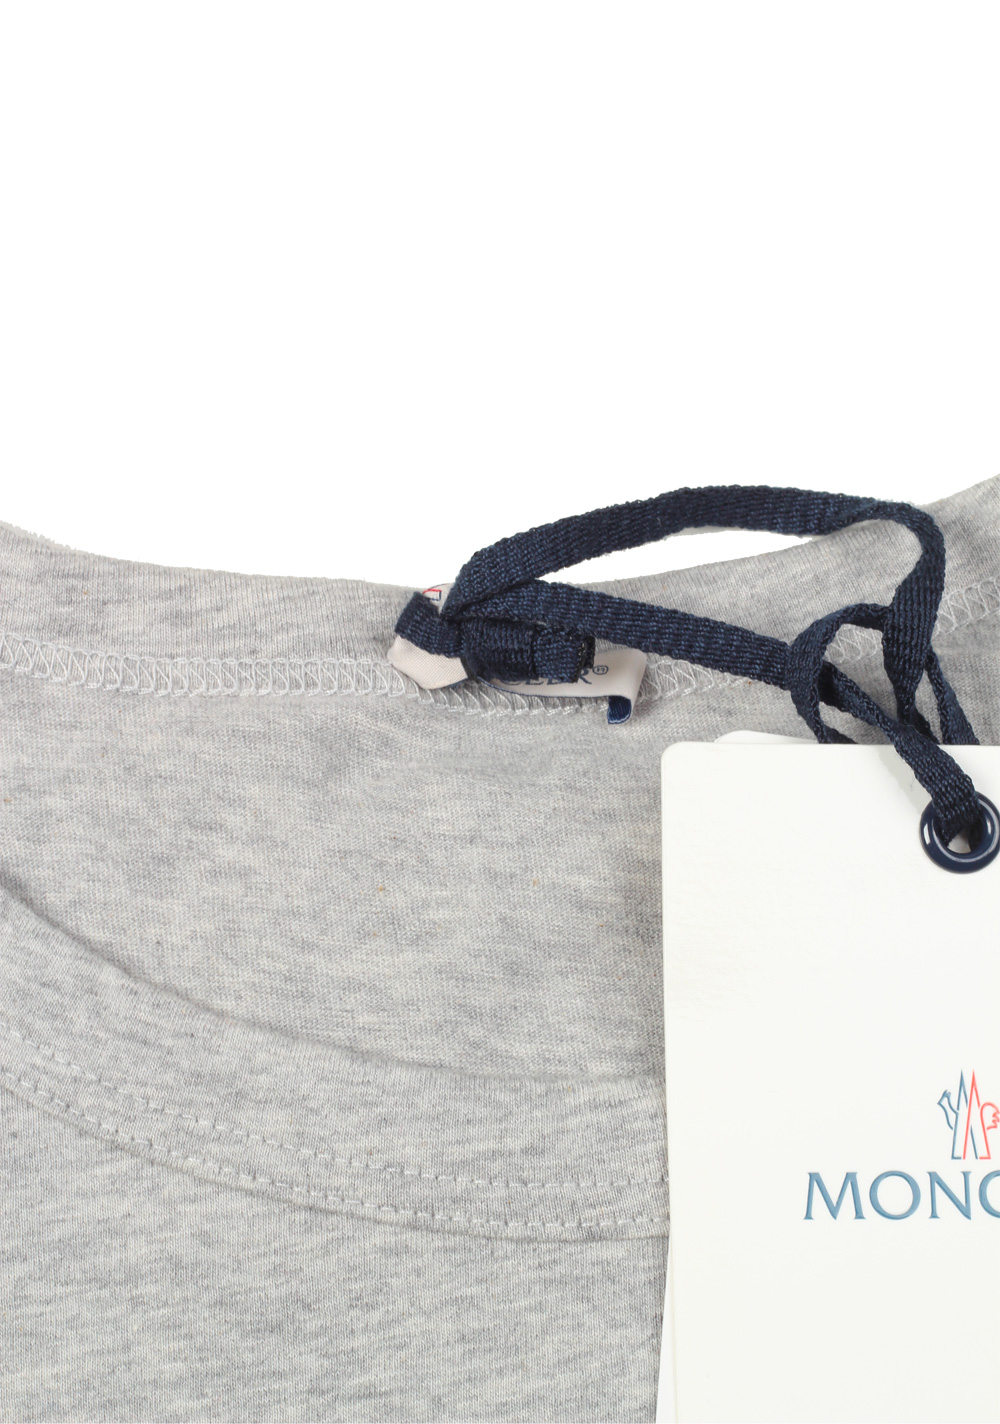 Moncler Crew Neck Tee Shirt Size L / 40R U.S. Gray | Costume Limité